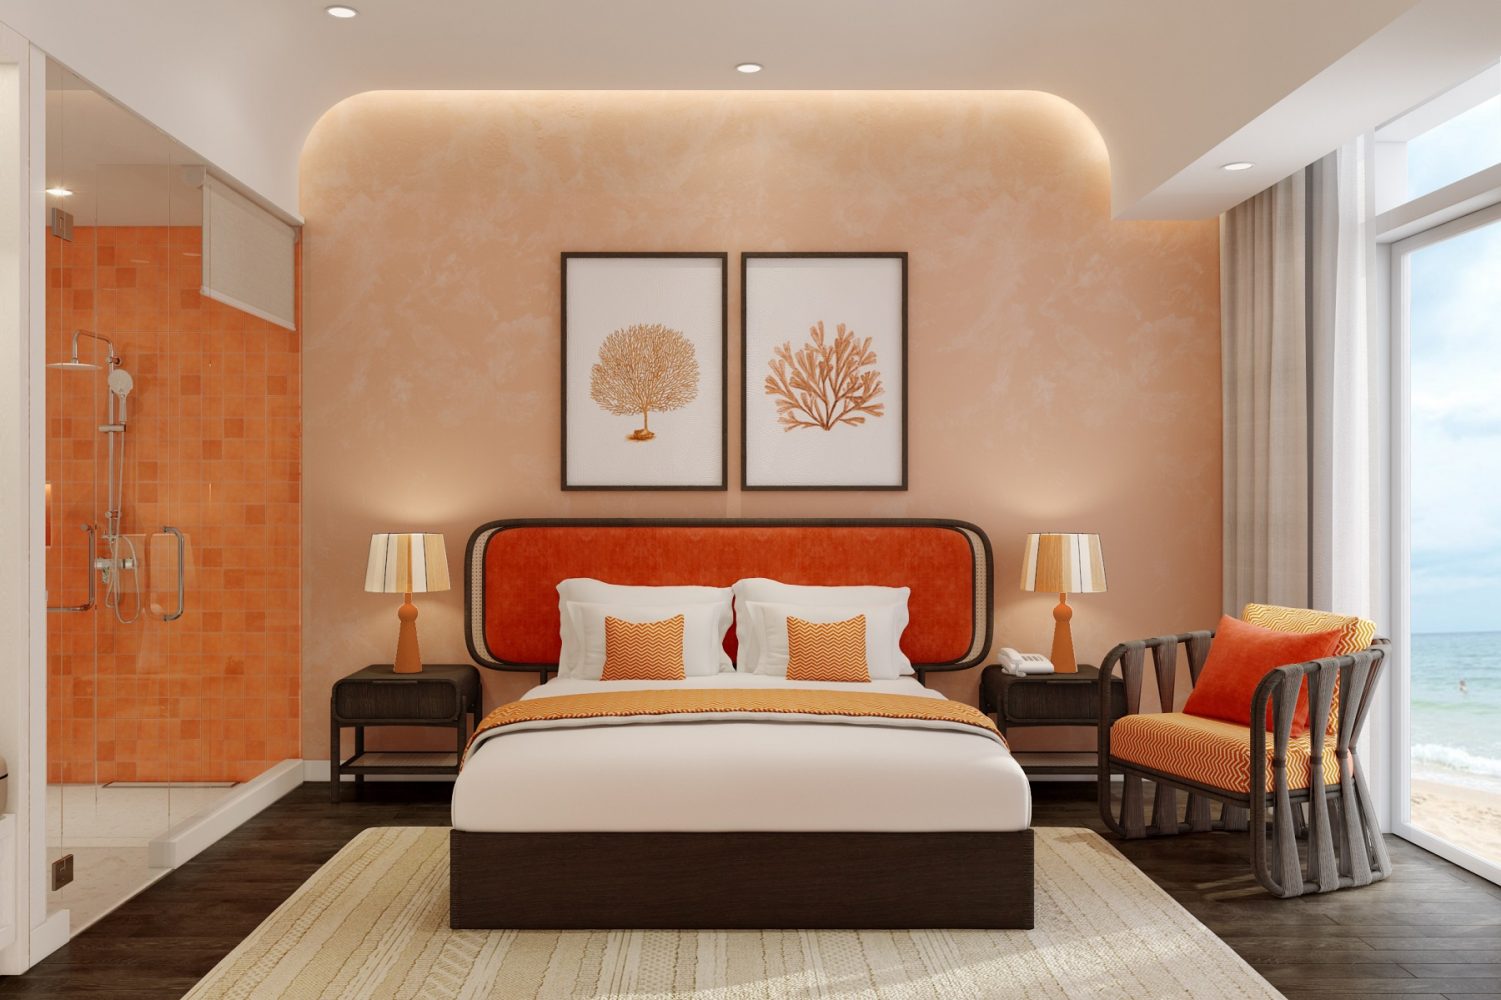 The Hill đem đến các dòng căn hộ như studio, dual key, 1-3 phòng ngủ… được bàn giao nội thất hoàn thiện theo phong cách Santorini. Ảnh phối cảnh.